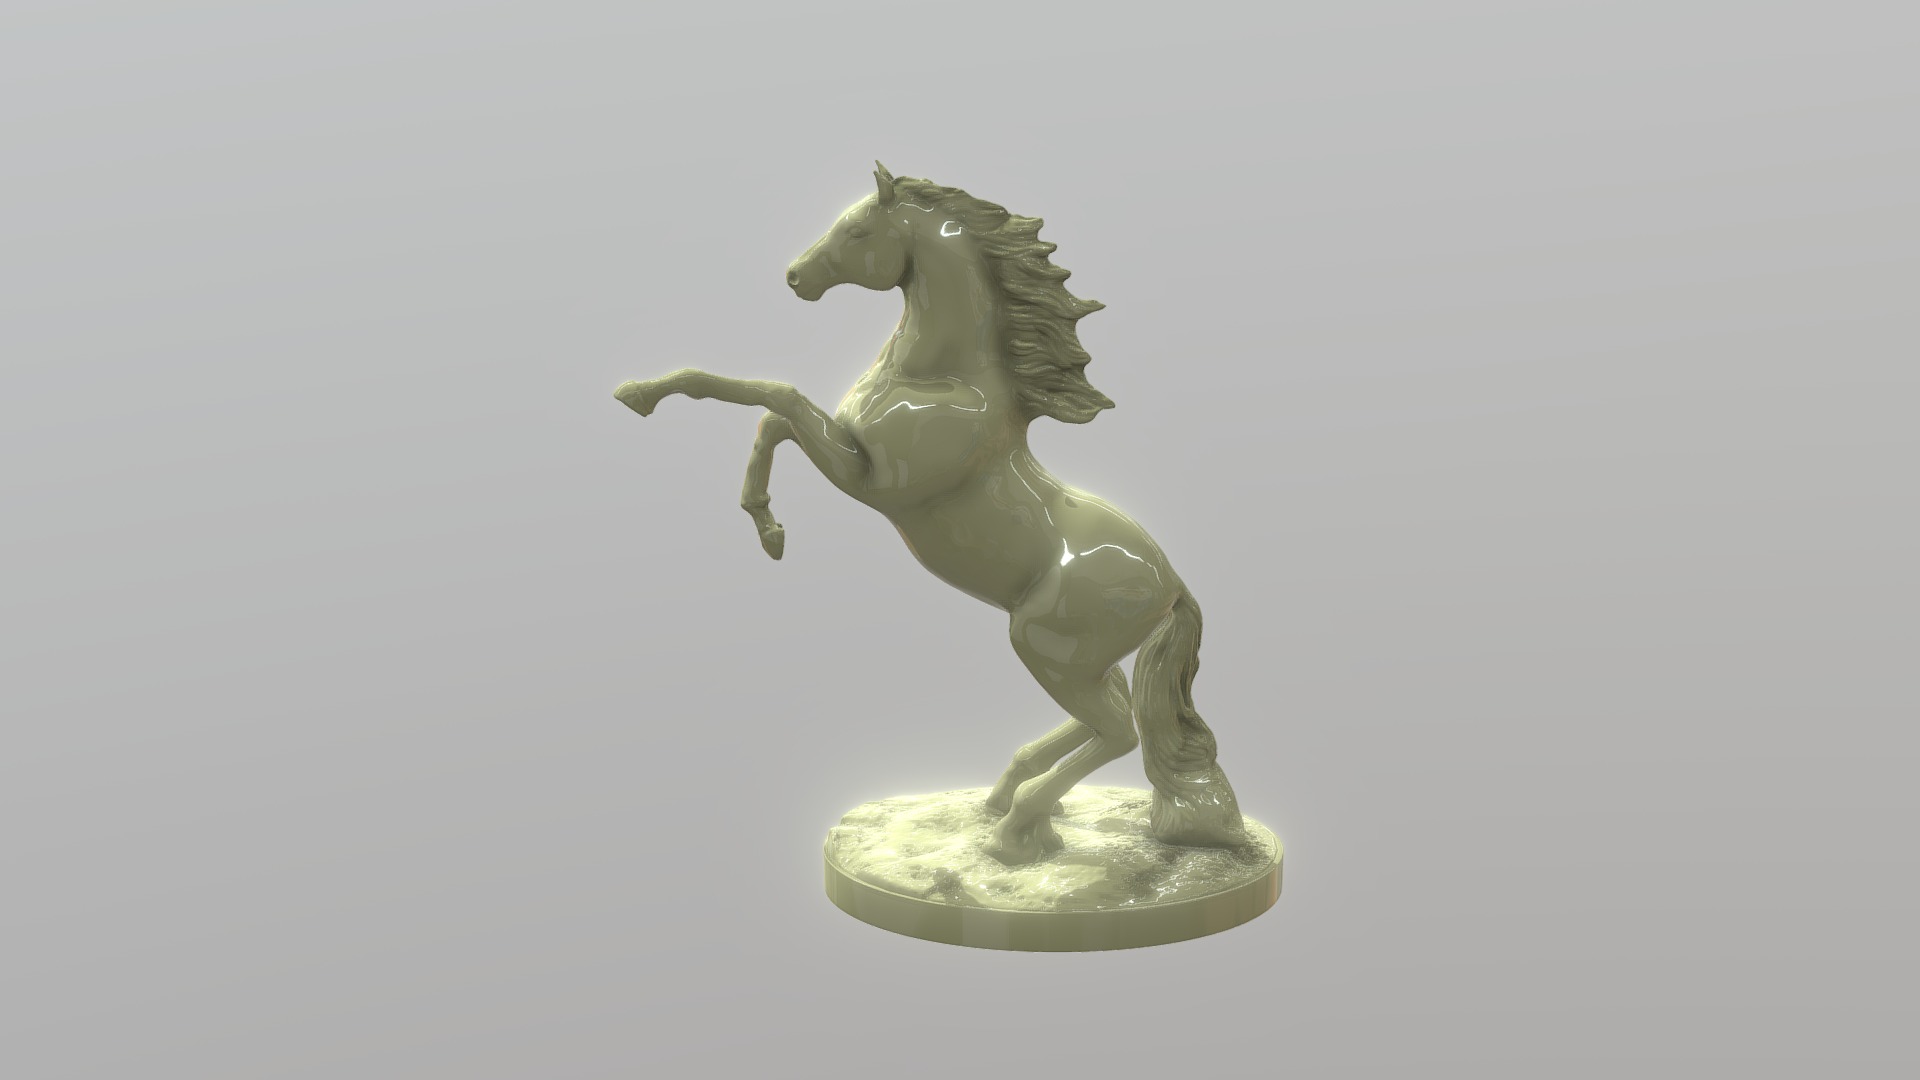 Horse 3D model - Con ngựa 3D
Horse model, 3d Horse, mô hình 3d con ngựa
Design by 3Dplus.vn - Horse 3D model - Con ngựa 3D - Buy Royalty Free 3D model by 3D Plus (@pattap) 3d model